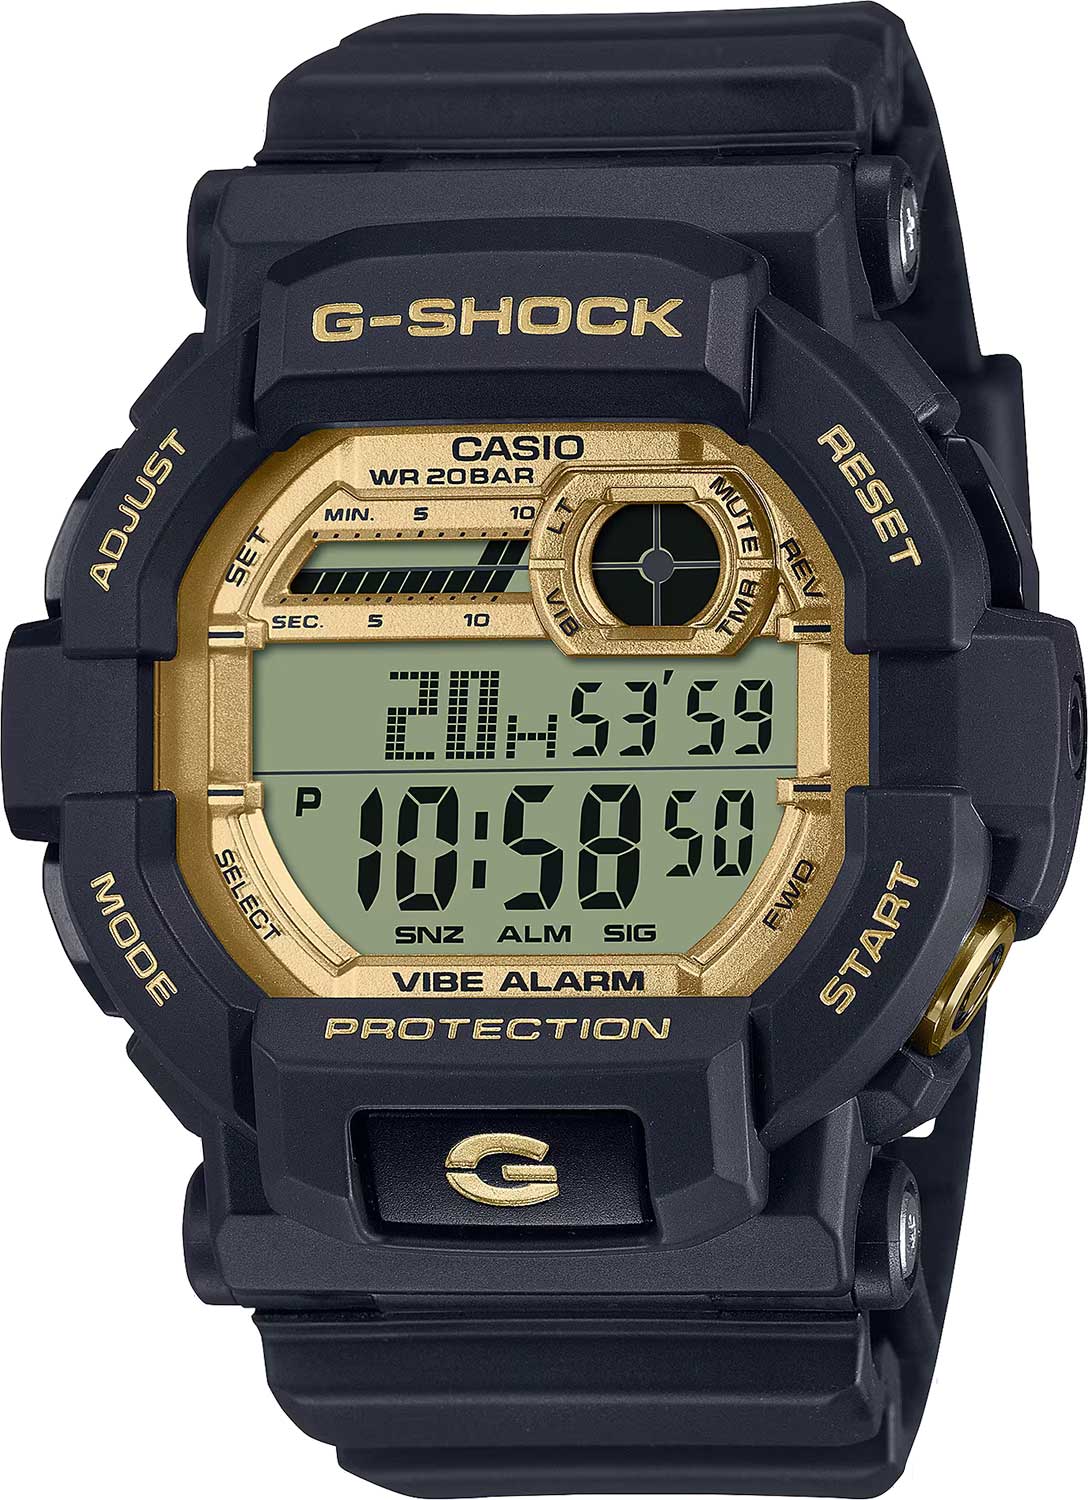    Casio G-SHOCK GD-350GB-1E  